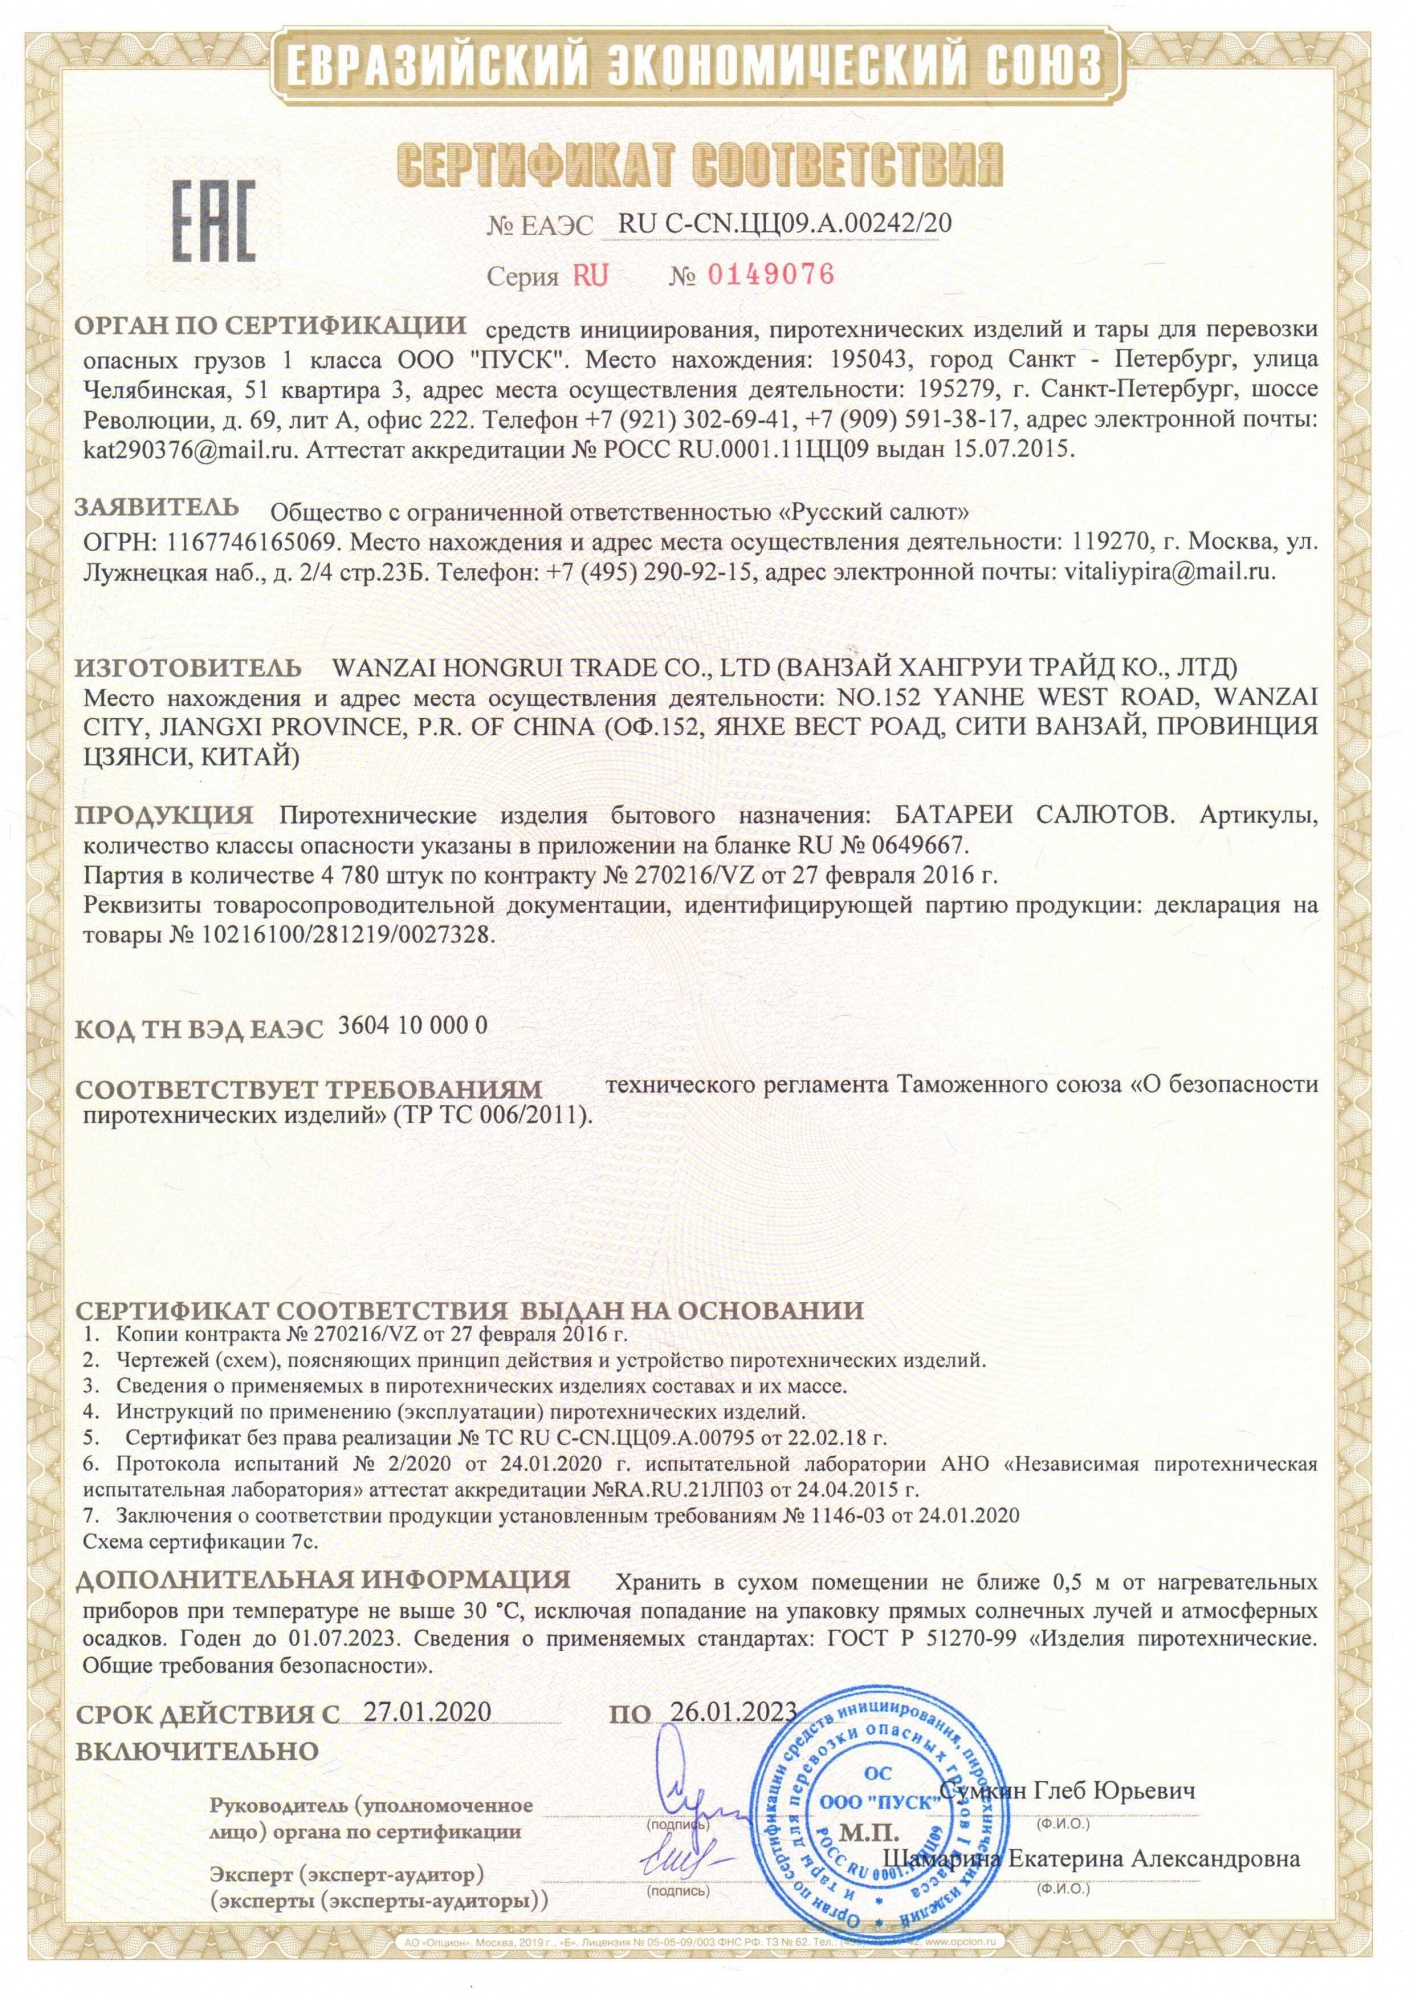 Сертификат 300 Спартанцев 0,8" х 300 (арт. РК7190)